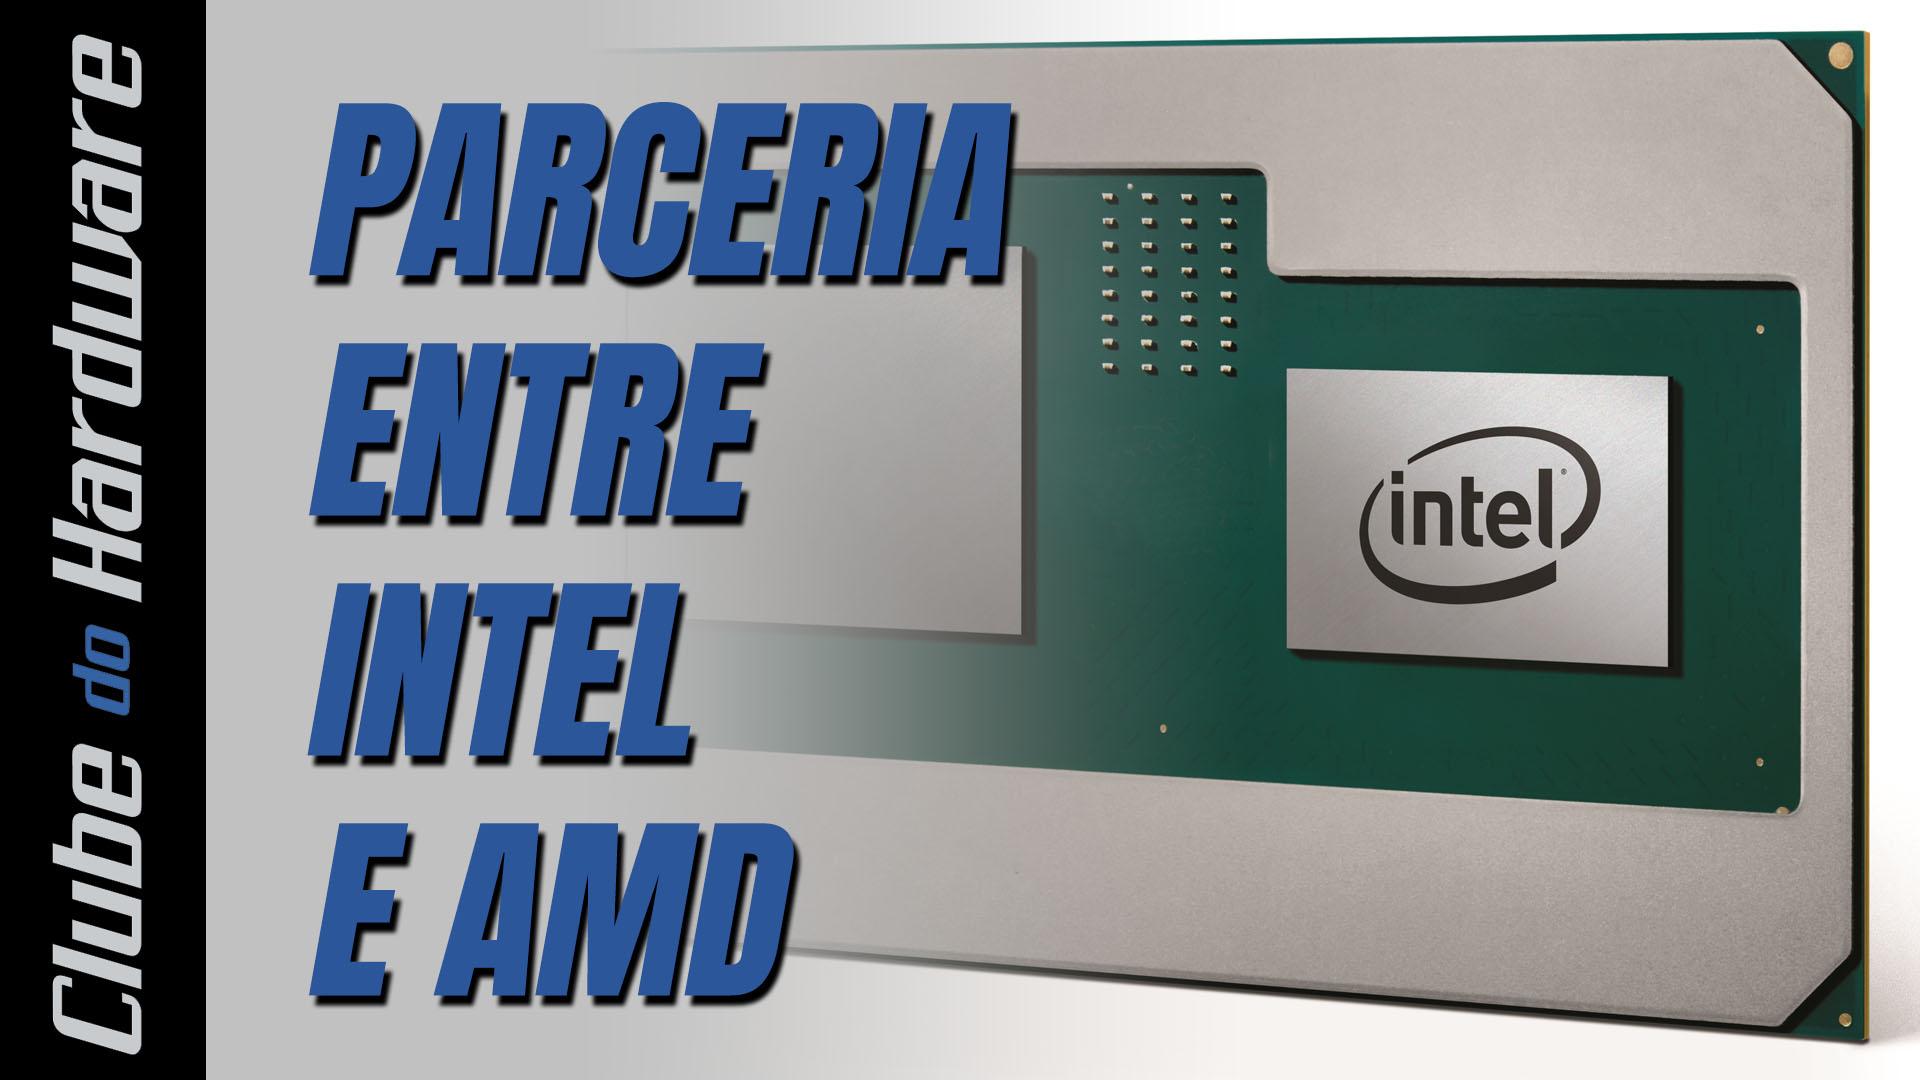 Análise da parceria entre Intel e AMD